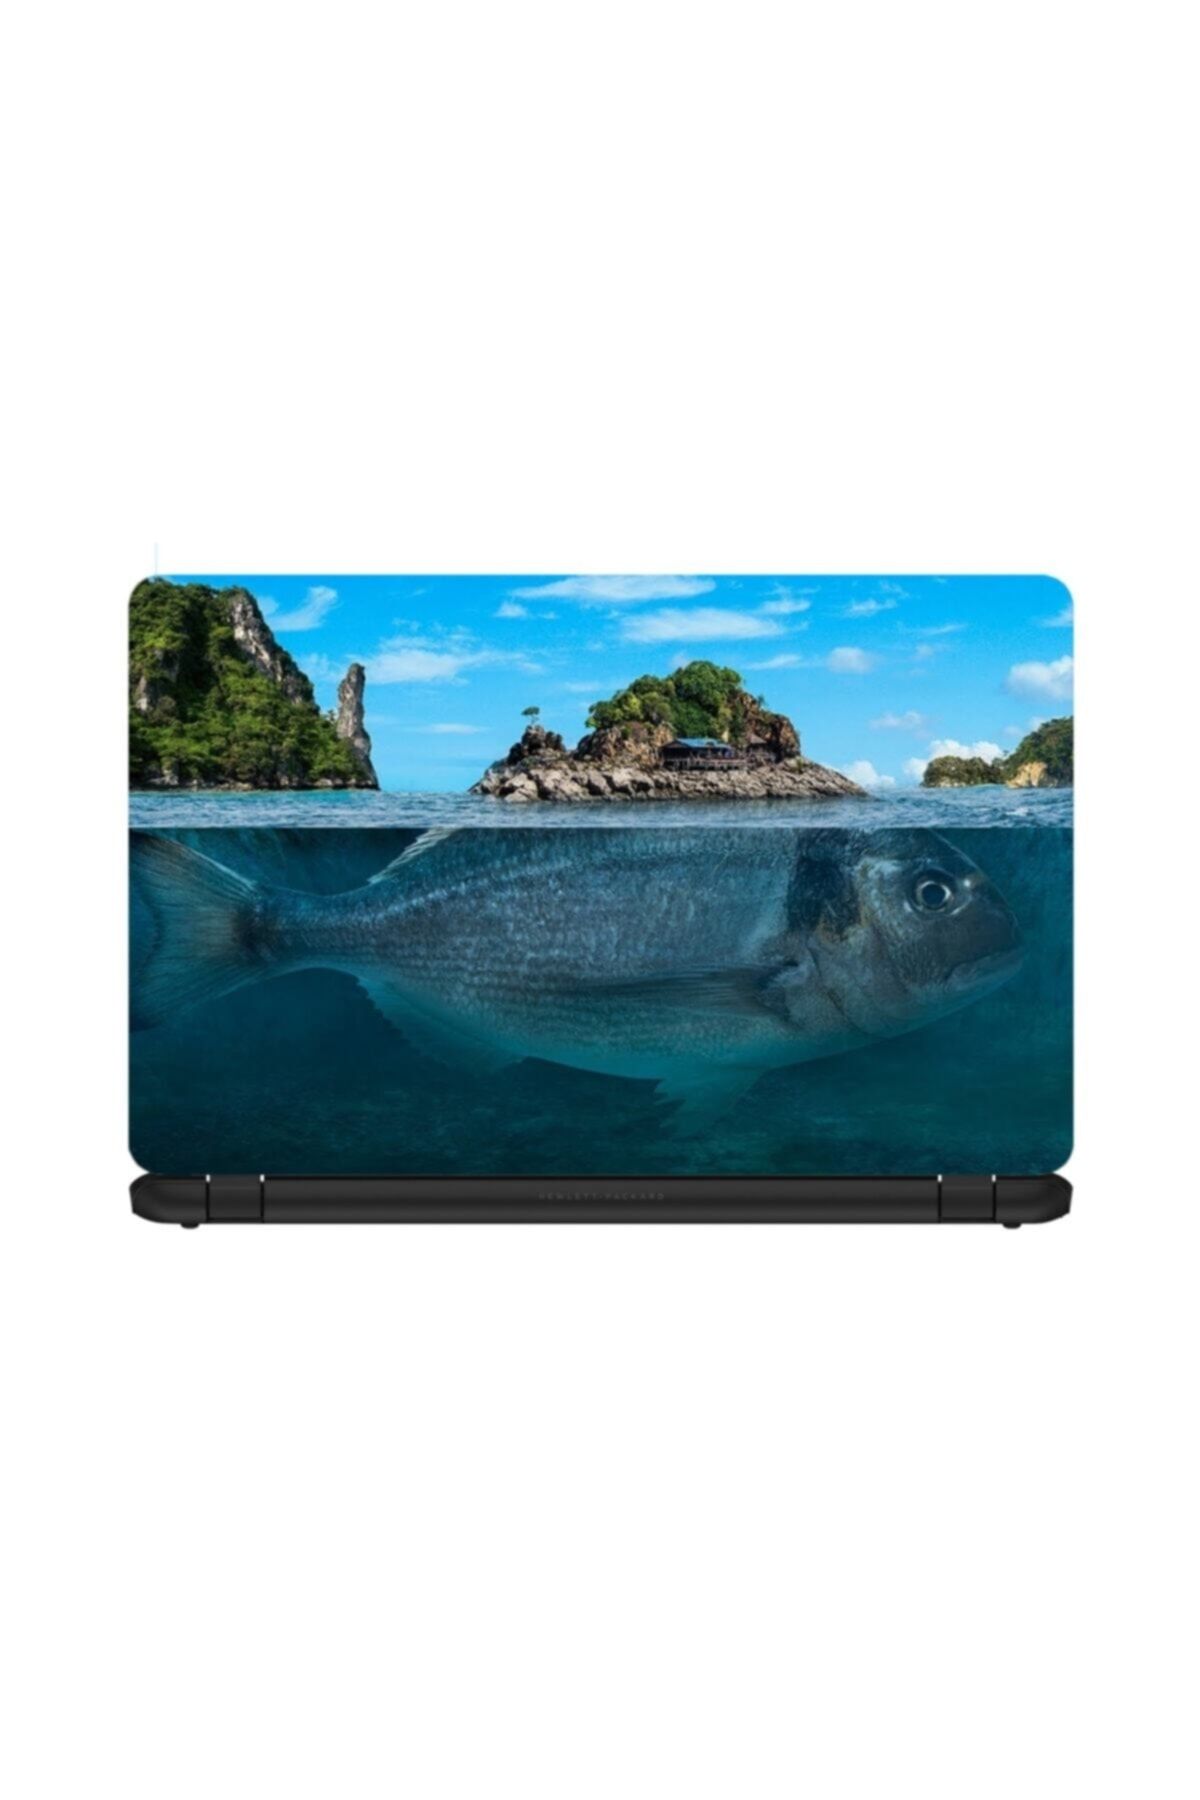 KT Decor Sürreal Balık Adası Laptop Sticker 15.6 Inch